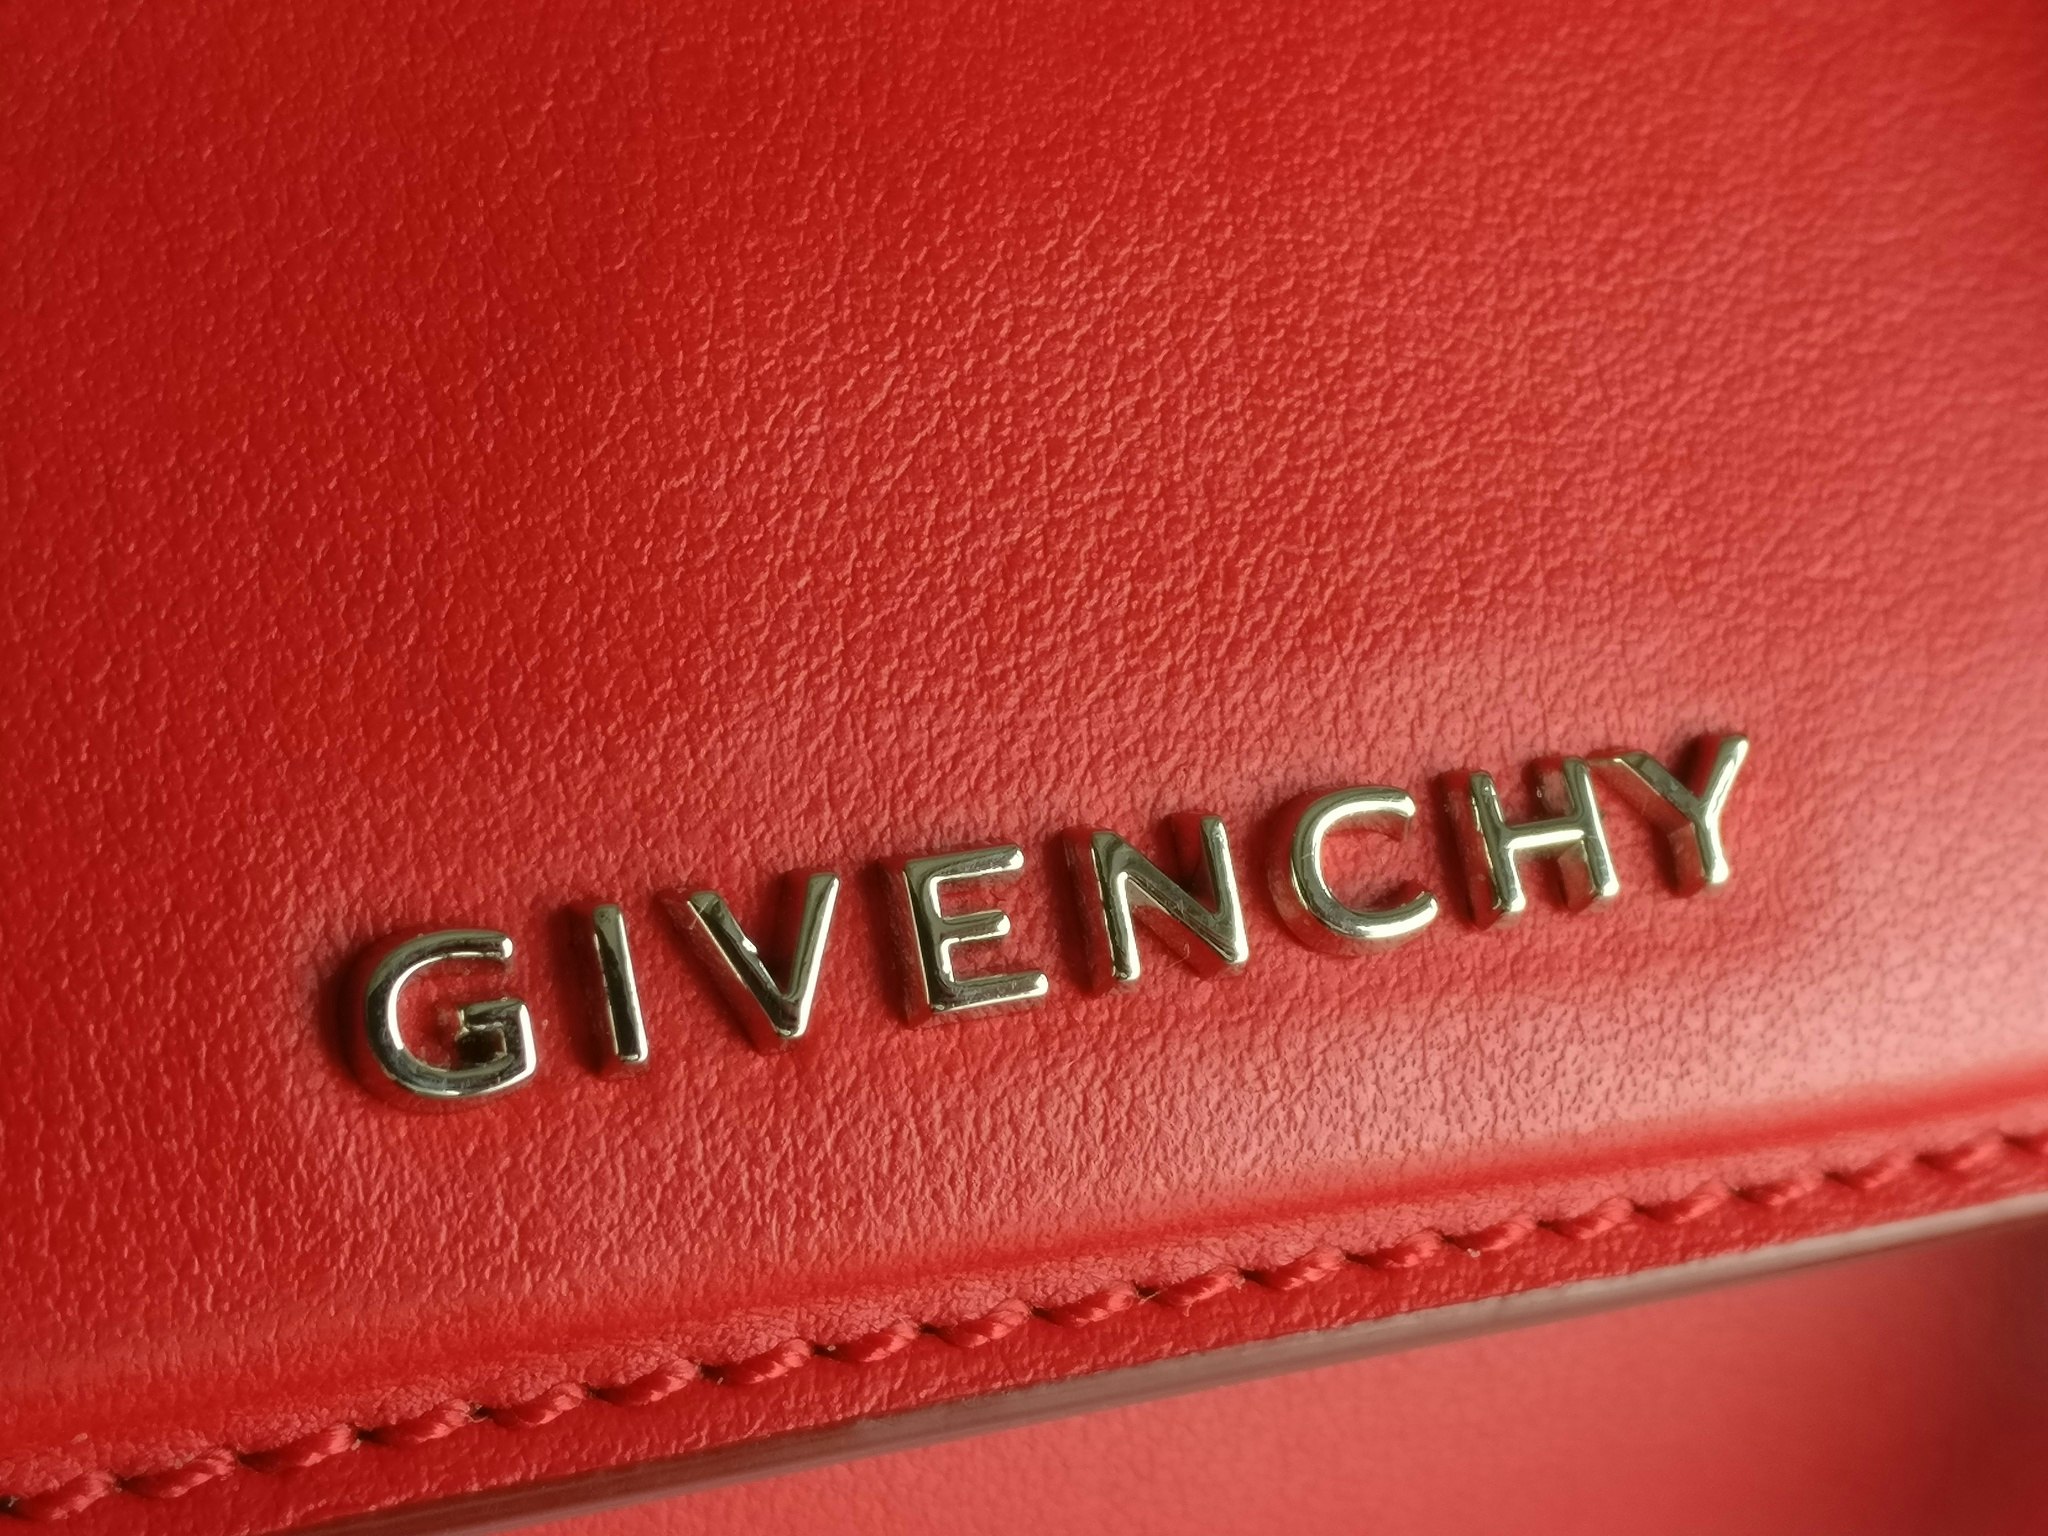 Givenchy Mini Pandora Box